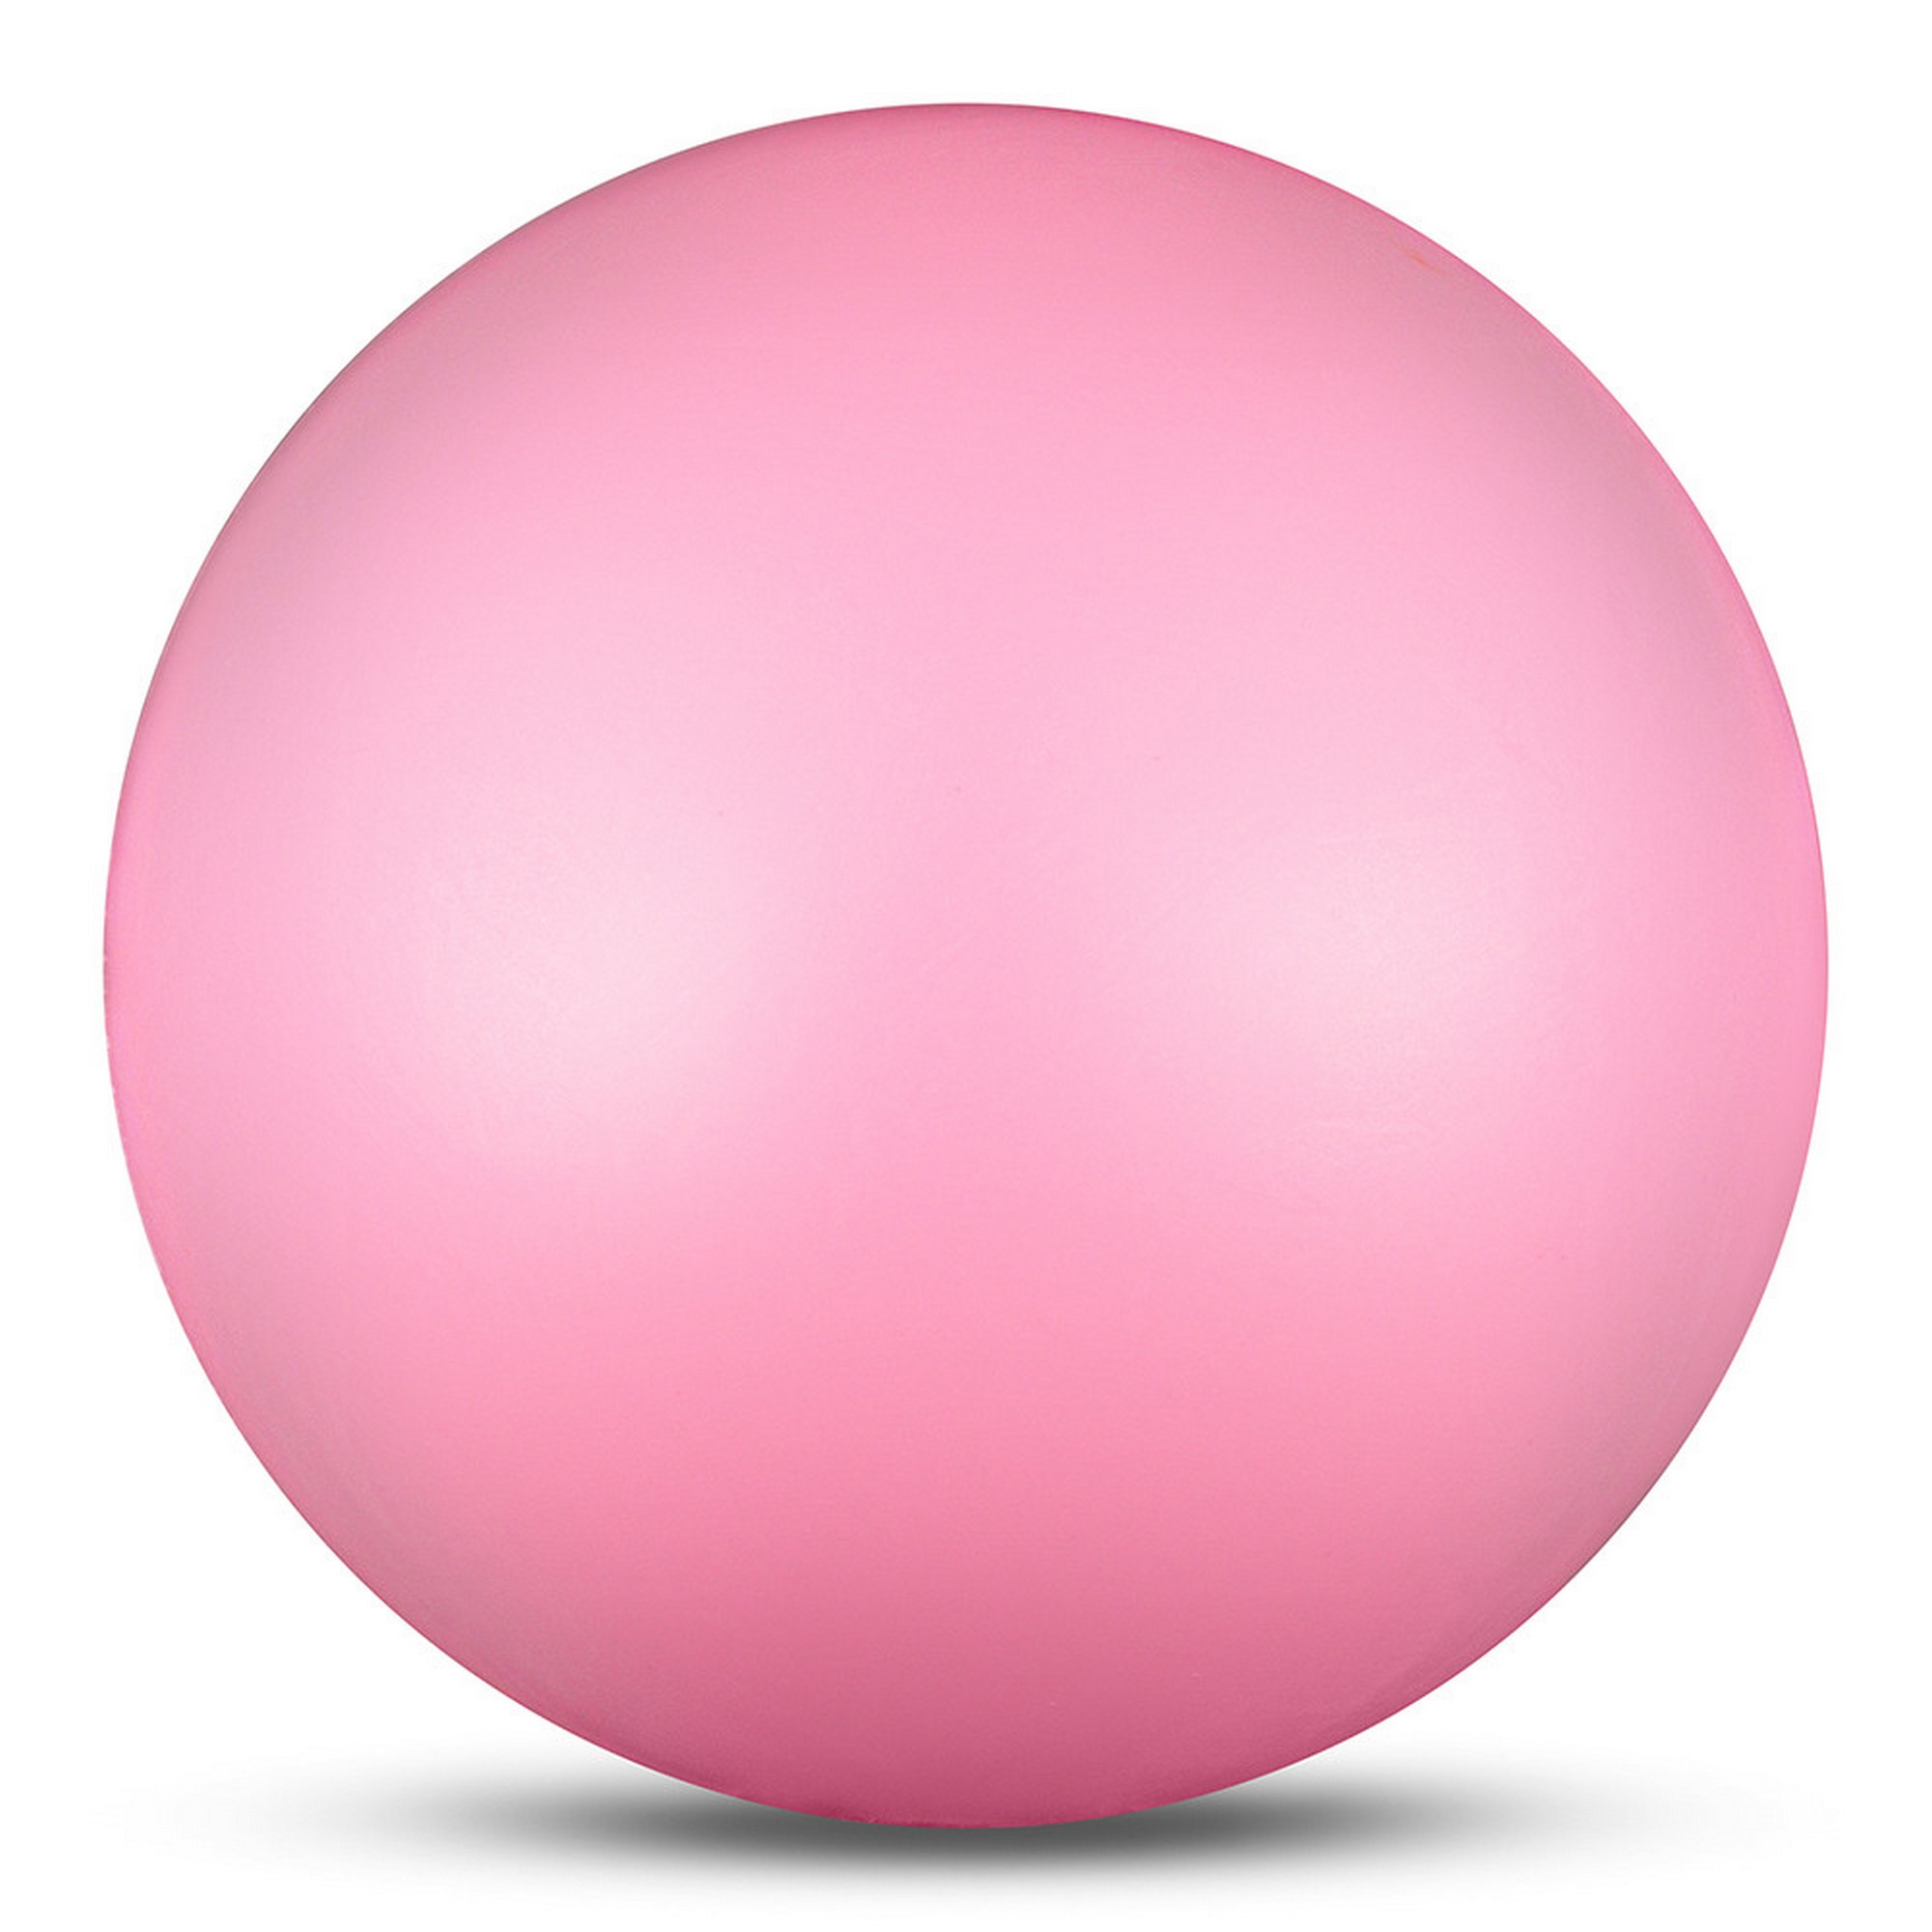 Мяч для художественной гимнастики d15см Indigo ПВХ IN315-PI розовый металлик 2000_2000